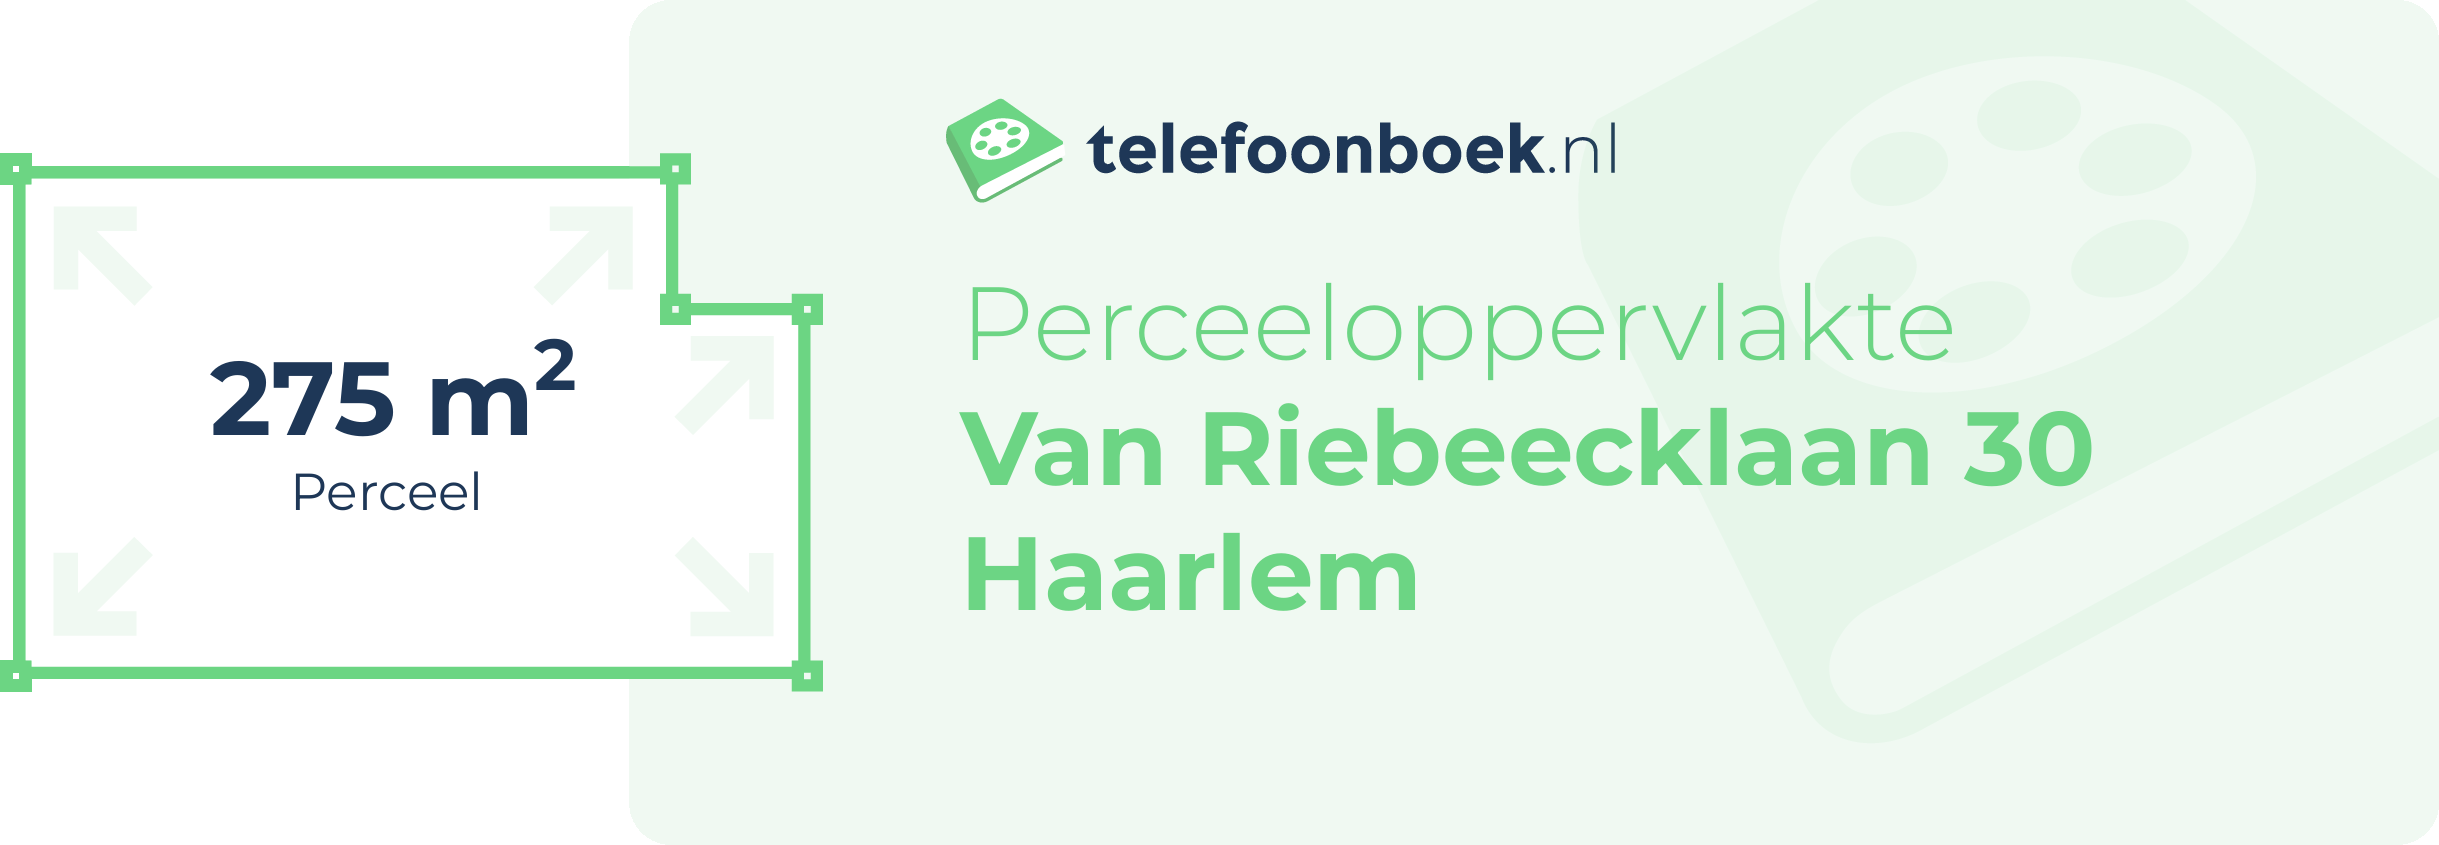 Perceeloppervlakte Van Riebeecklaan 30 Haarlem